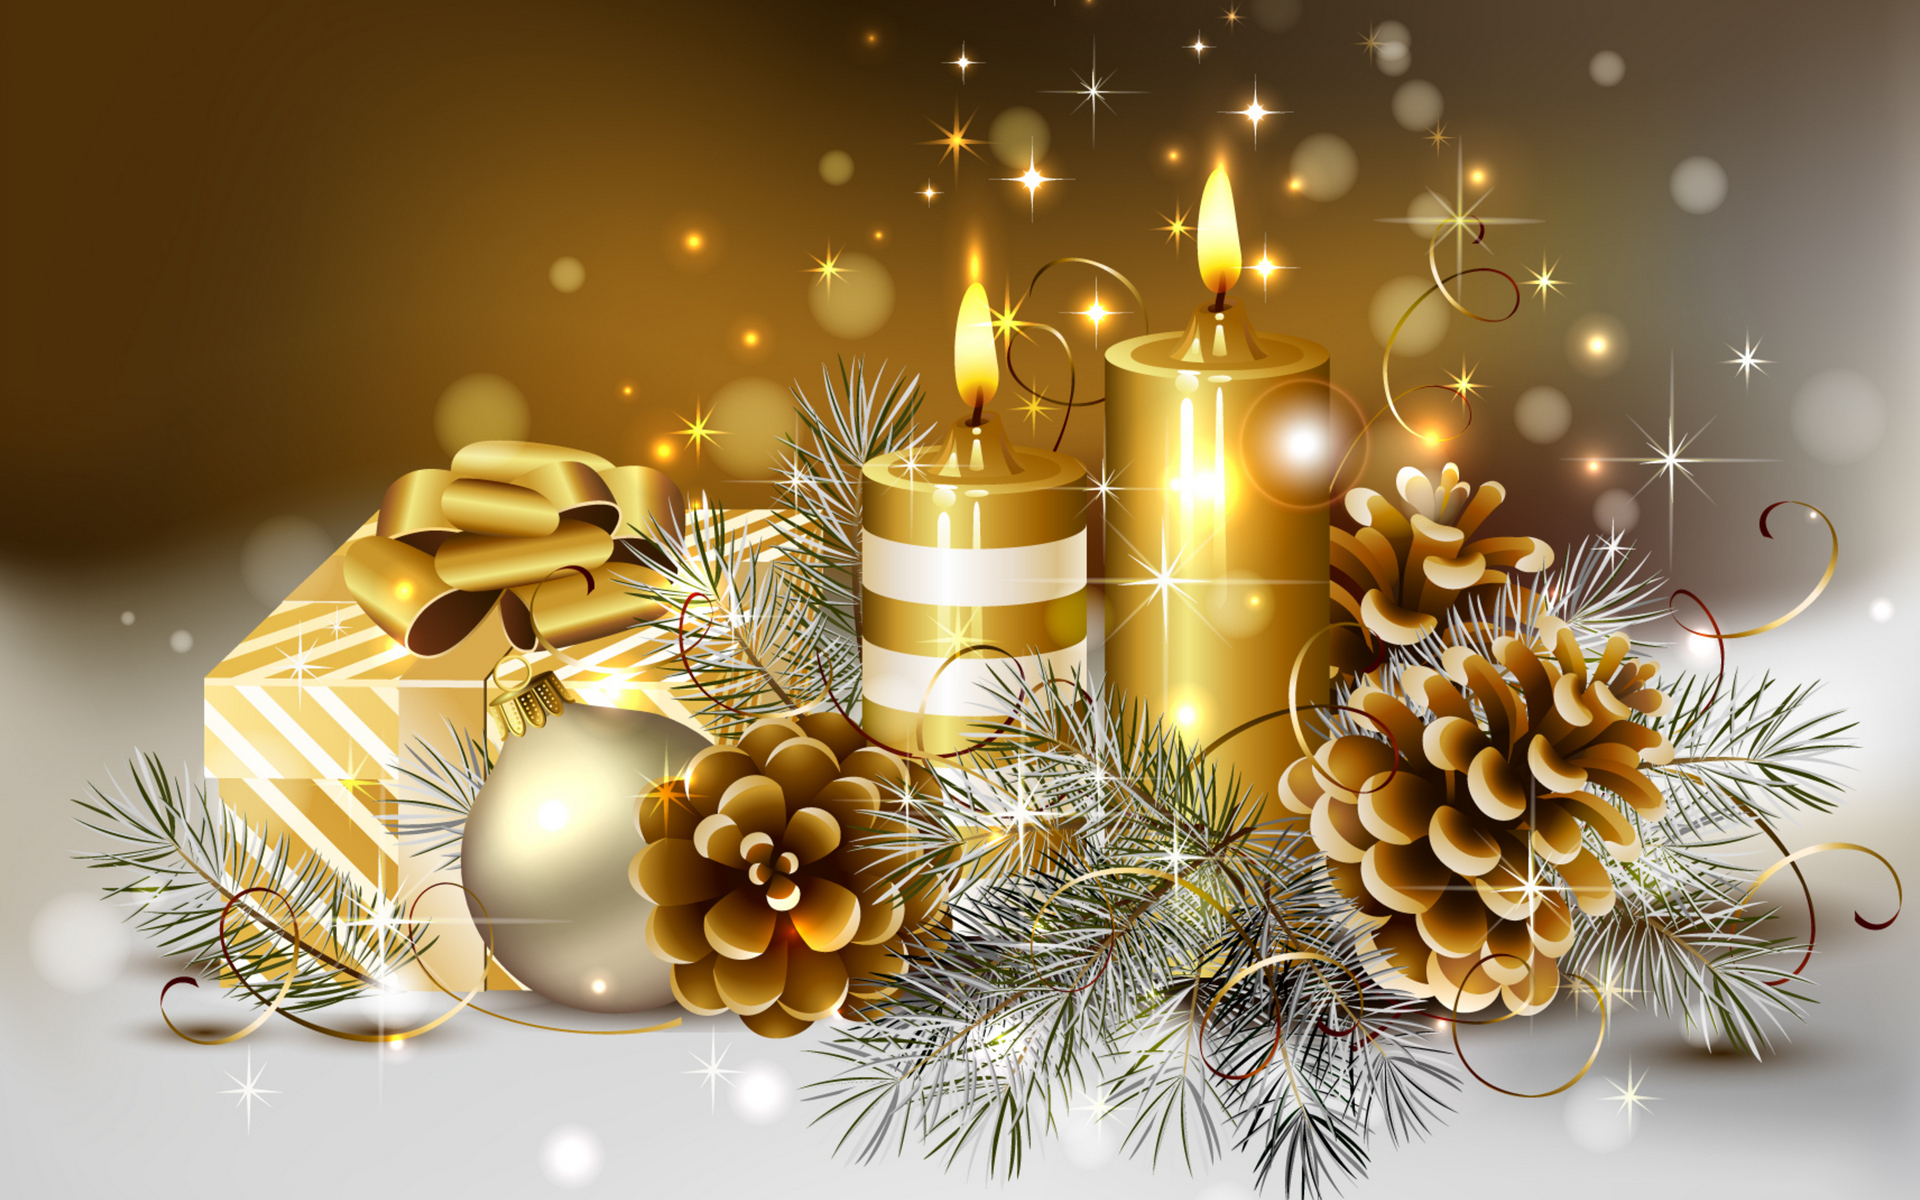 xmas wallpaper hd,vigilia di natale,decorazione natalizia,candela,albero,illuminazione